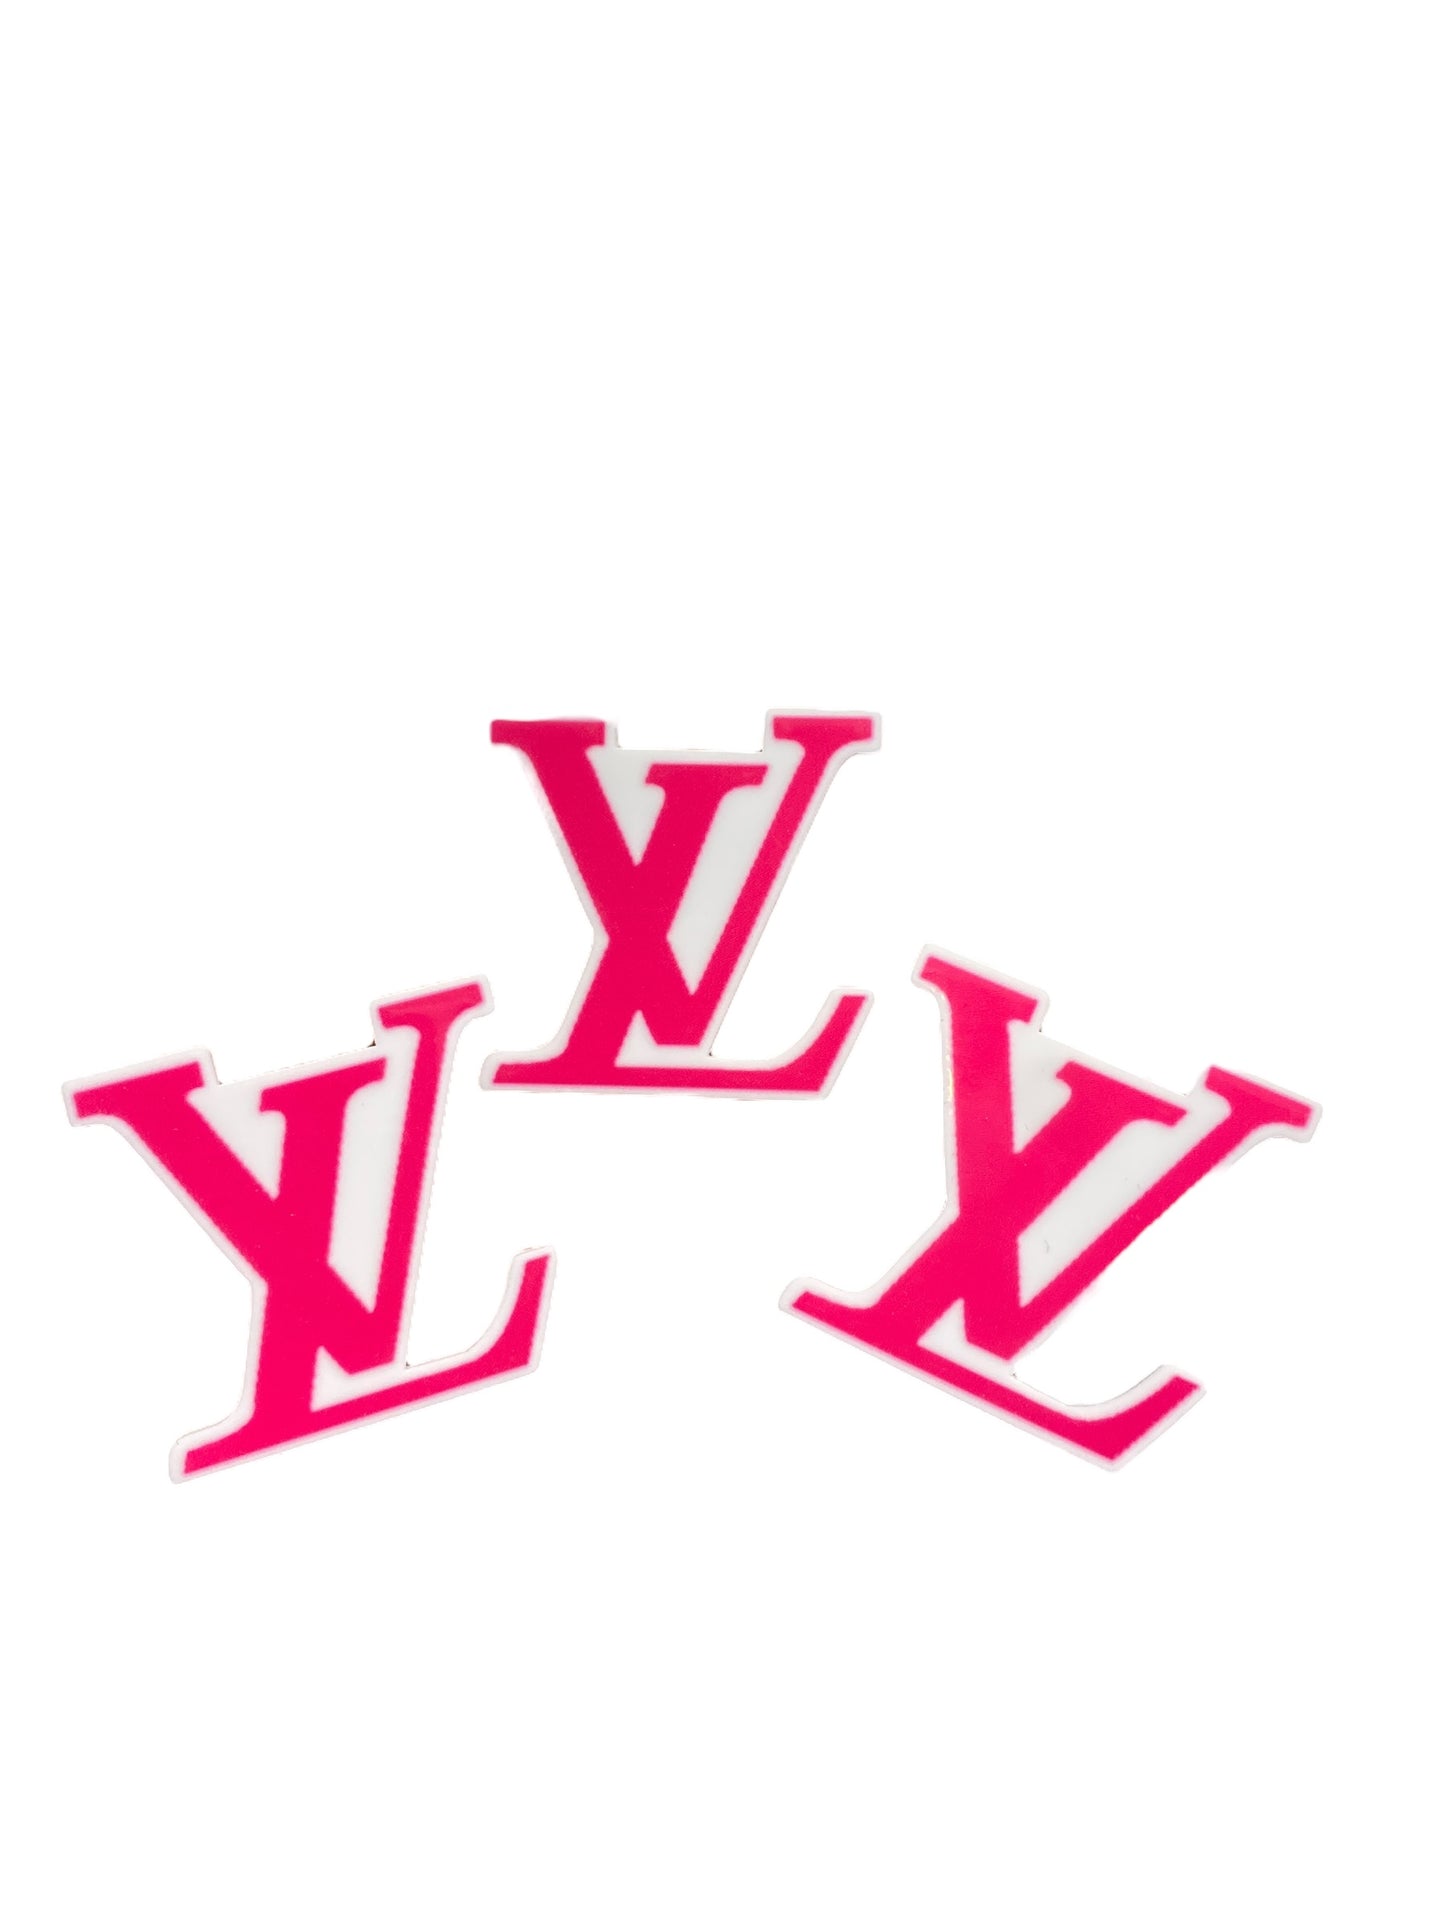 Hot Pink LV Resins Planar, Designer Resin Planar (Price is for 1 Piece)